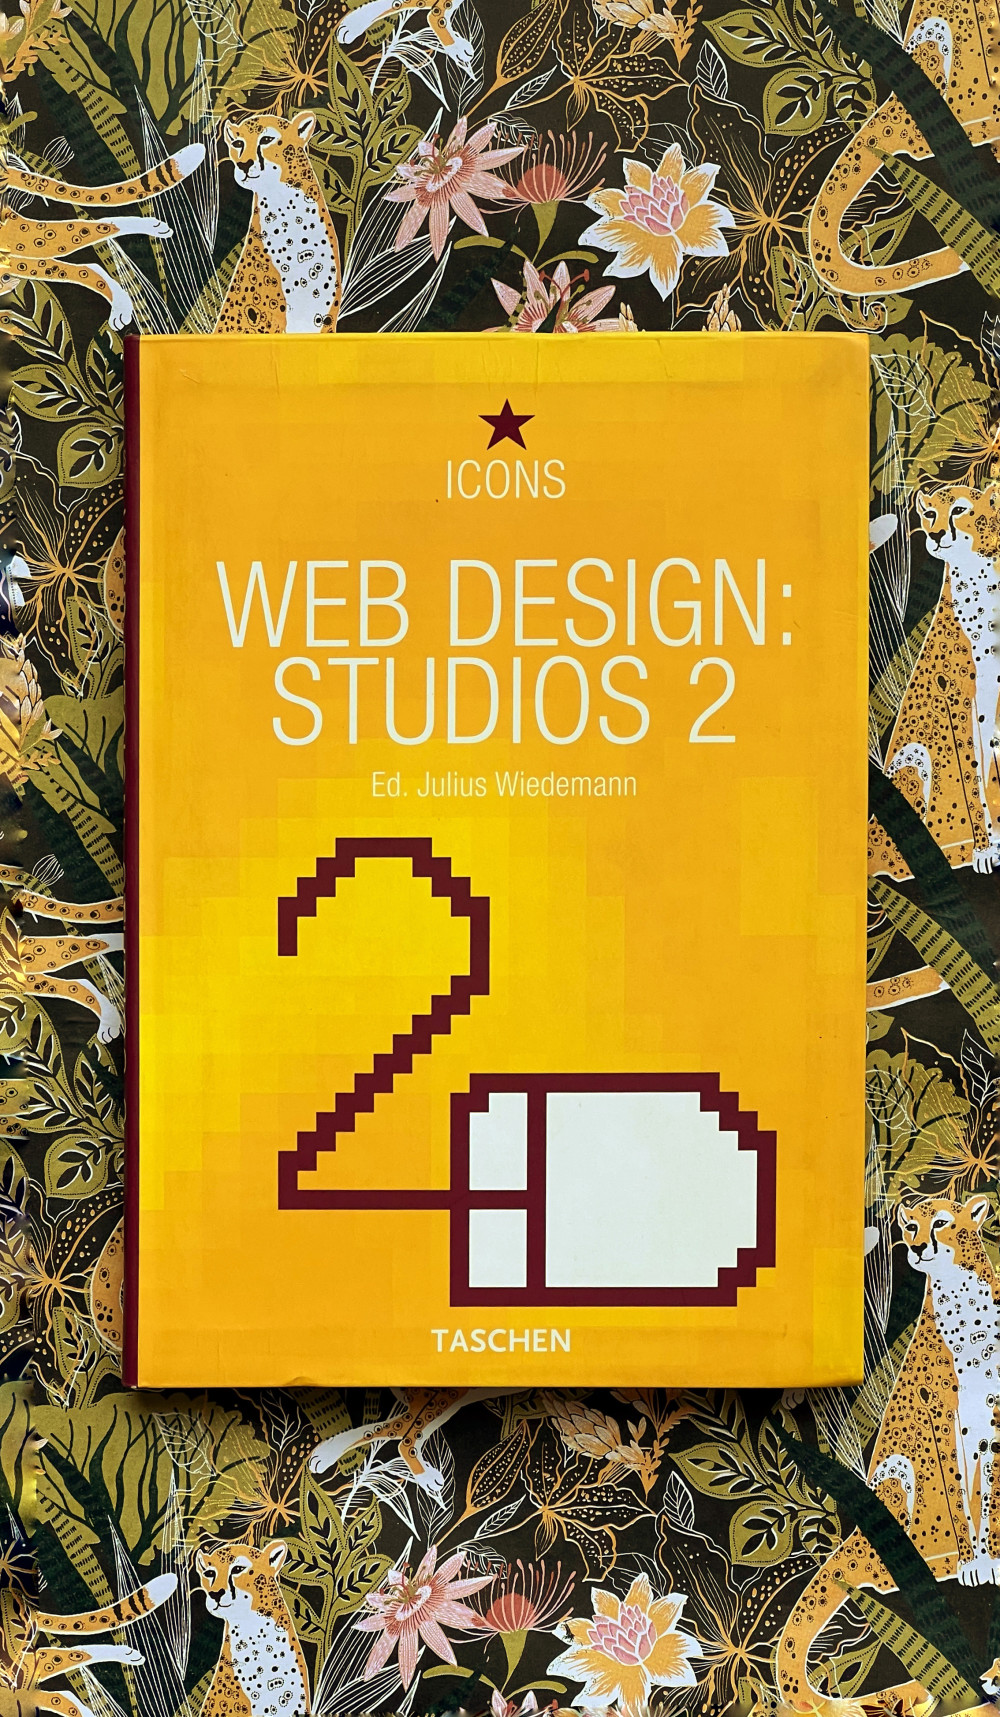 Icons by Ed. Julius Wiedermann: Web Design Studios 2 (Taschen). Cover